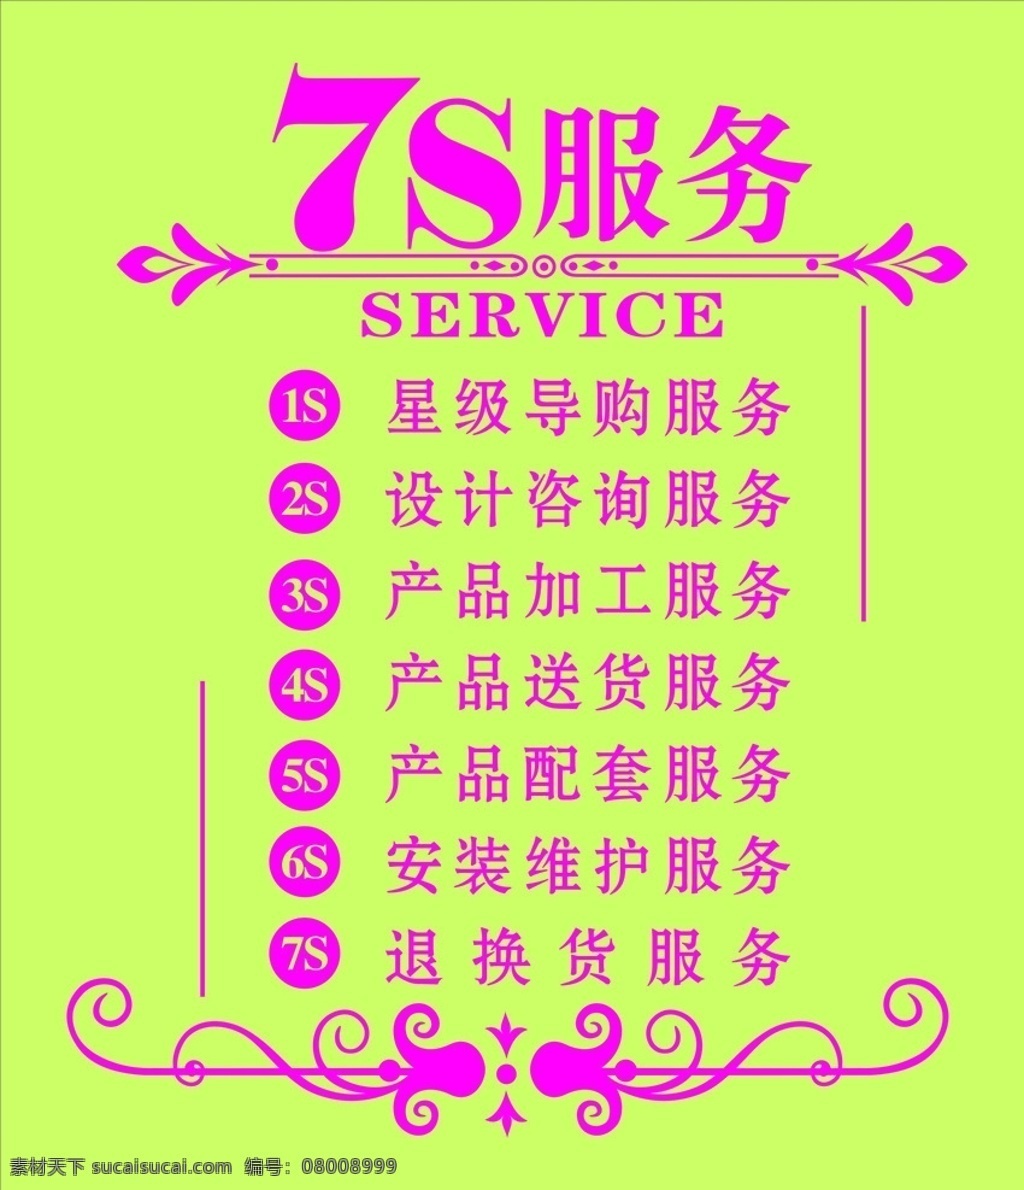 7s 服务 7s服务 产品服务 花边